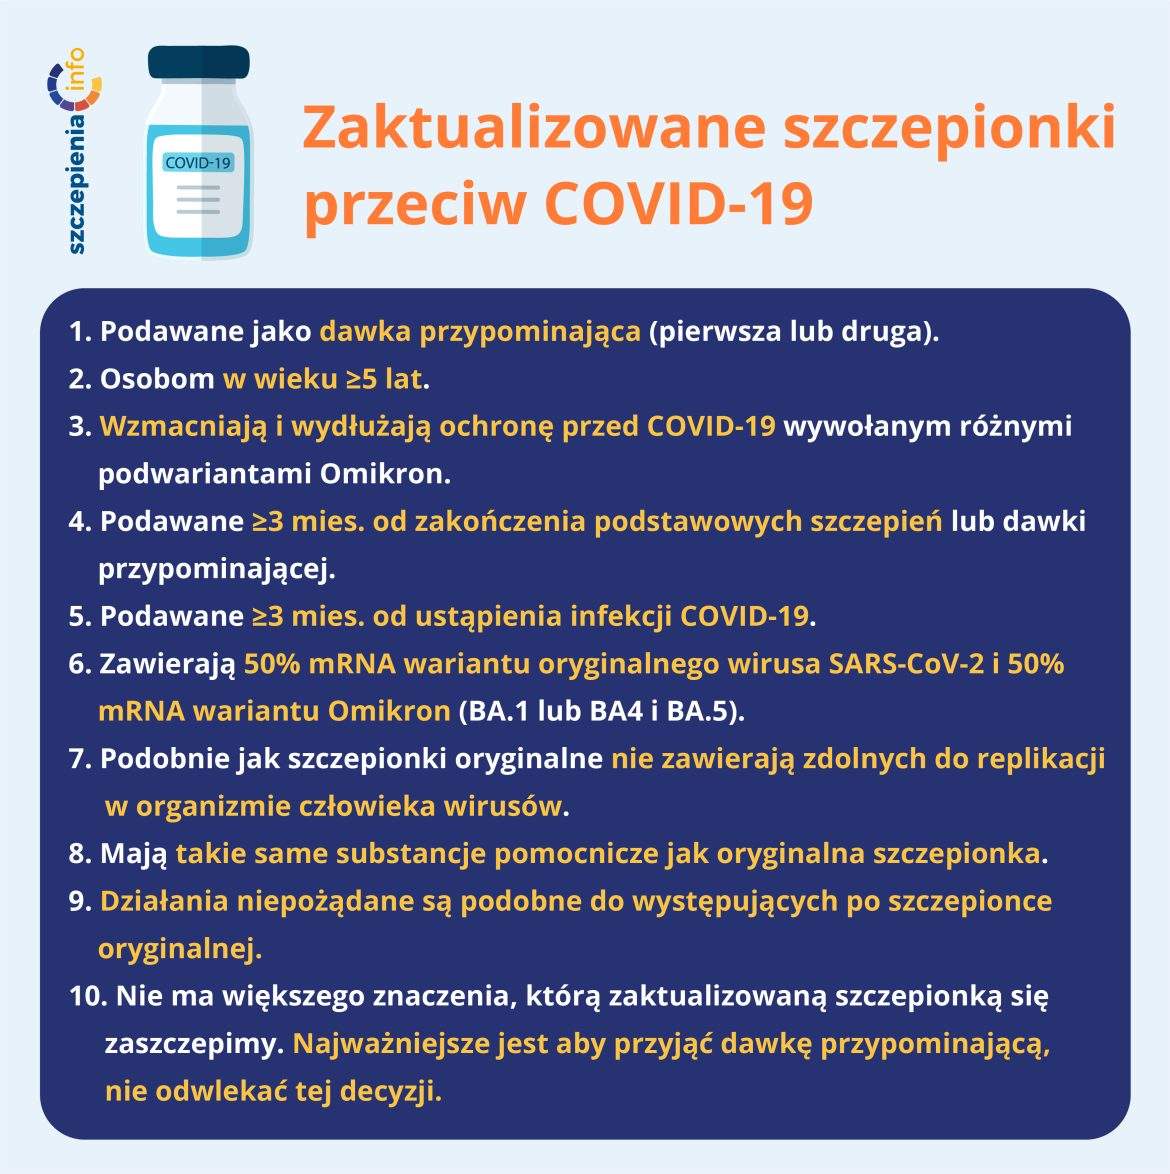 Zaktualizowane szczepionki przeciw COVID-19